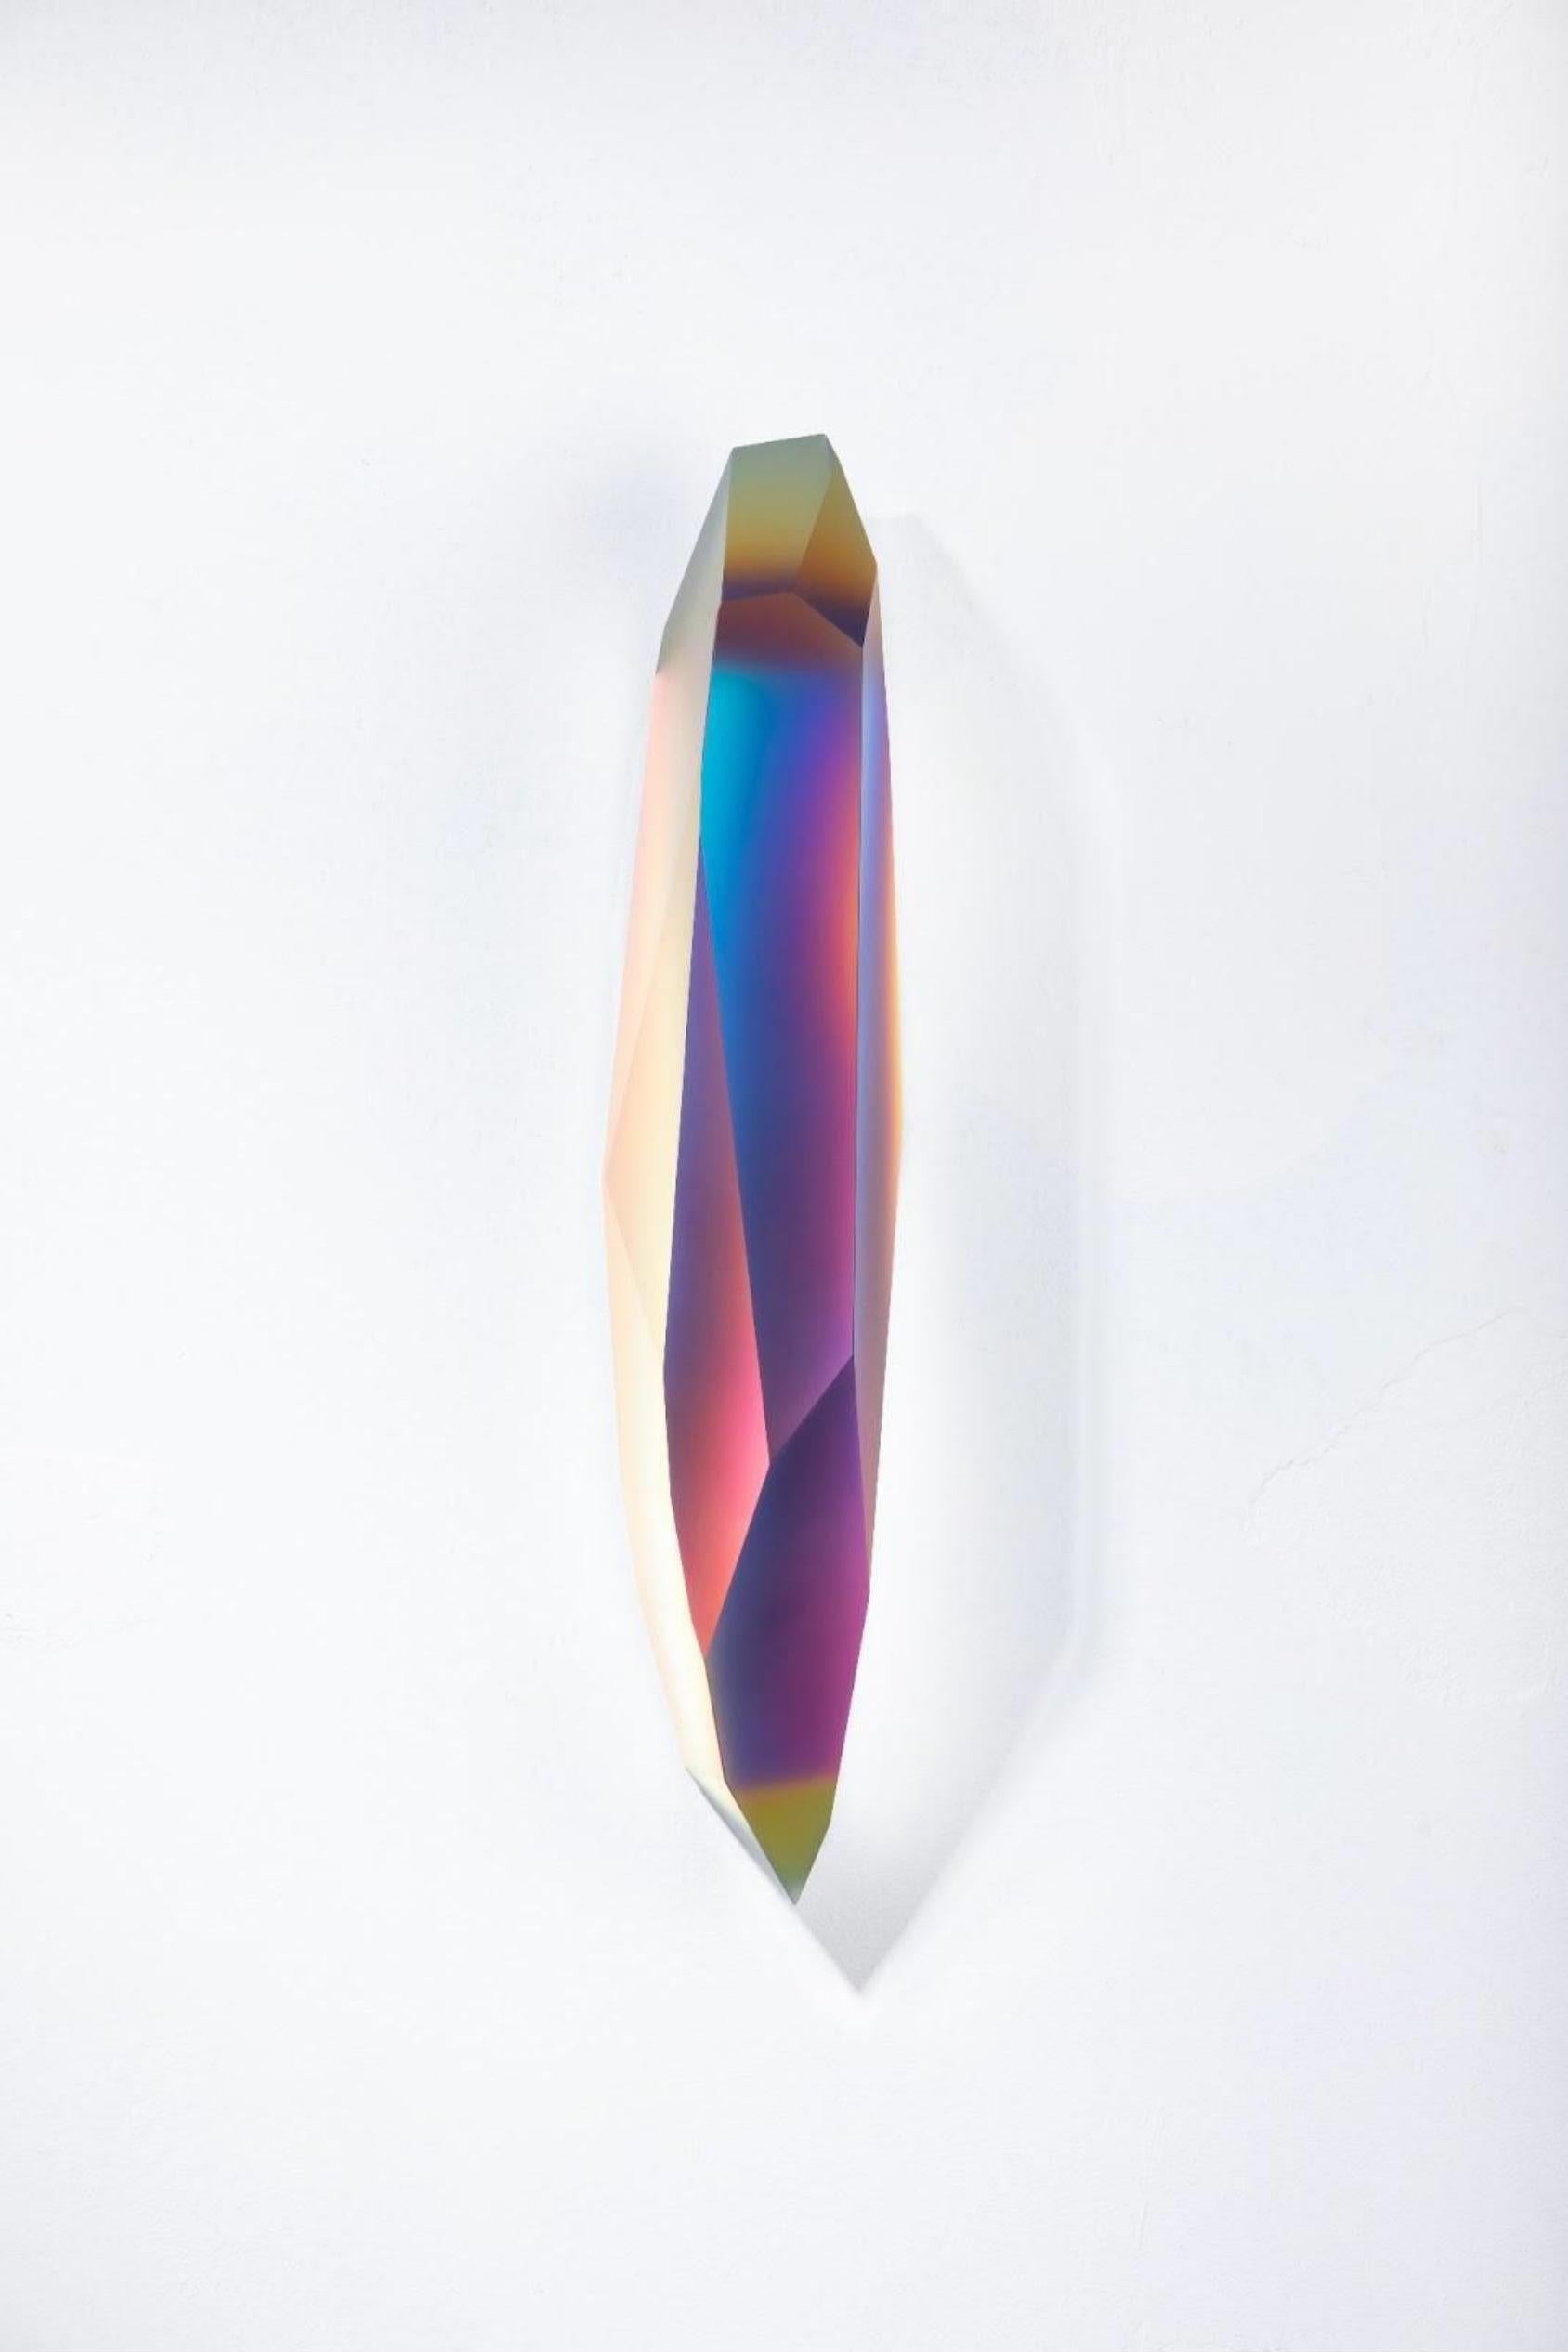 Pretty Mirage 0205 par Lukas Novak
Dimensions : L 16 x D 16 x H 63 cm
MATERIAL : Verre taillé, cristal, dégradé de couleurs

La série Pretty Mirage est composée de cristaux muraux. Il s'agit d'une composition unique de coupes dans le verre et d'un